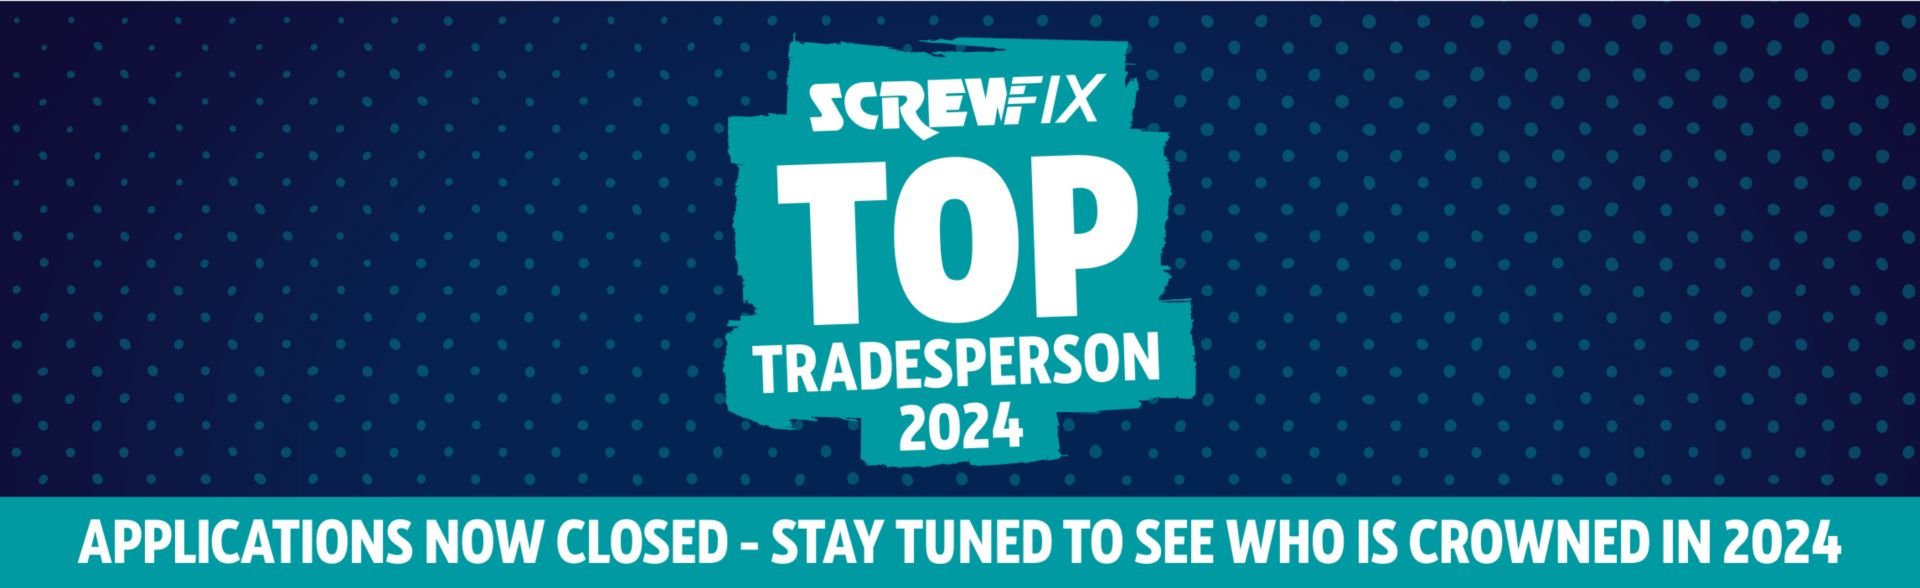 Screwfix Top Tradesperson 2024 - Applications Closed